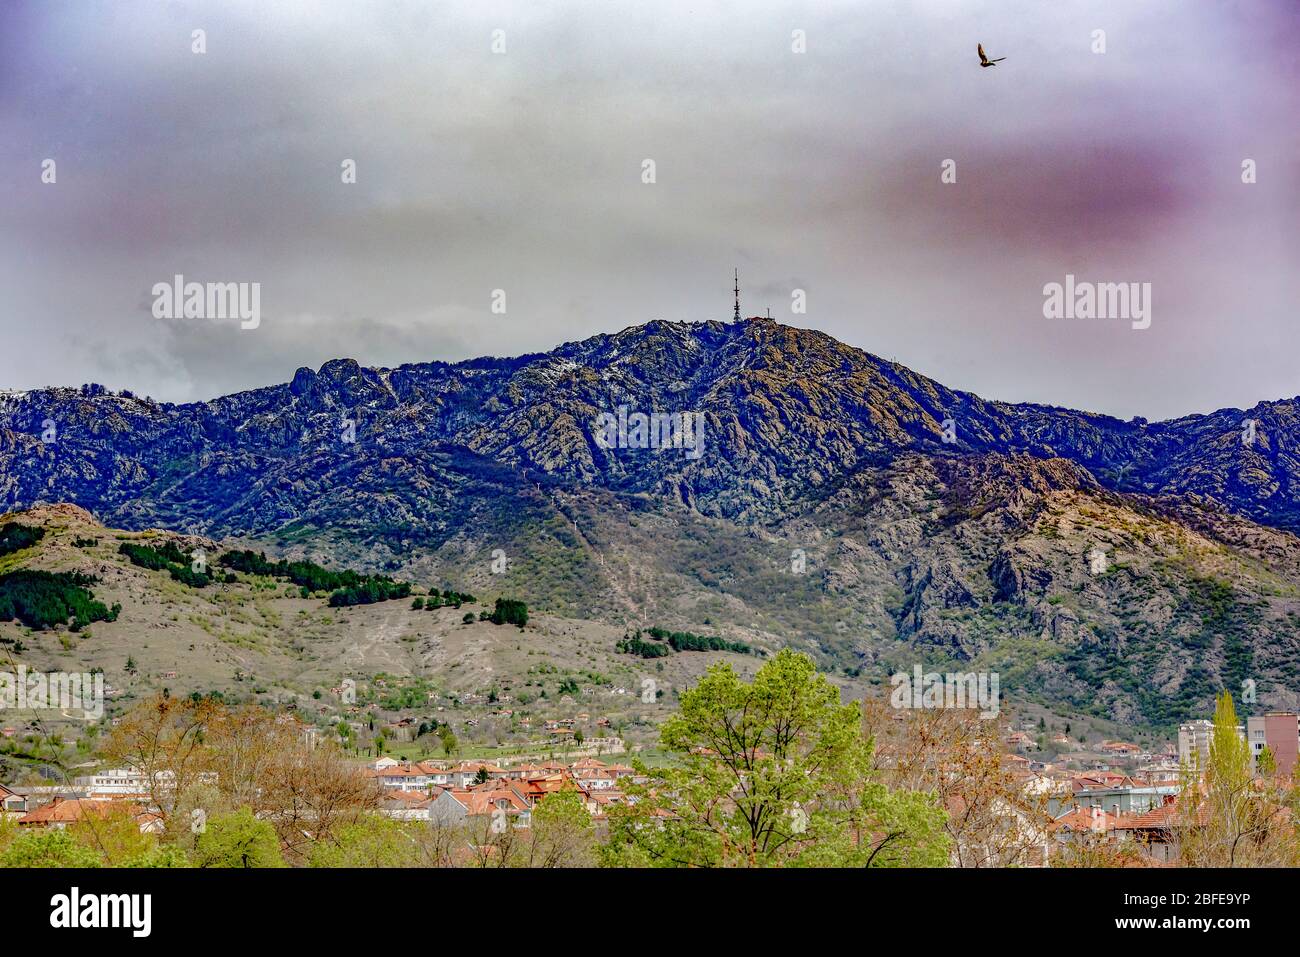 Vista spettacolare di una montagna rocciosa, cielo minaccioso e un uccello in volo. Città visibile ai piedi della montagna. Foto Stock